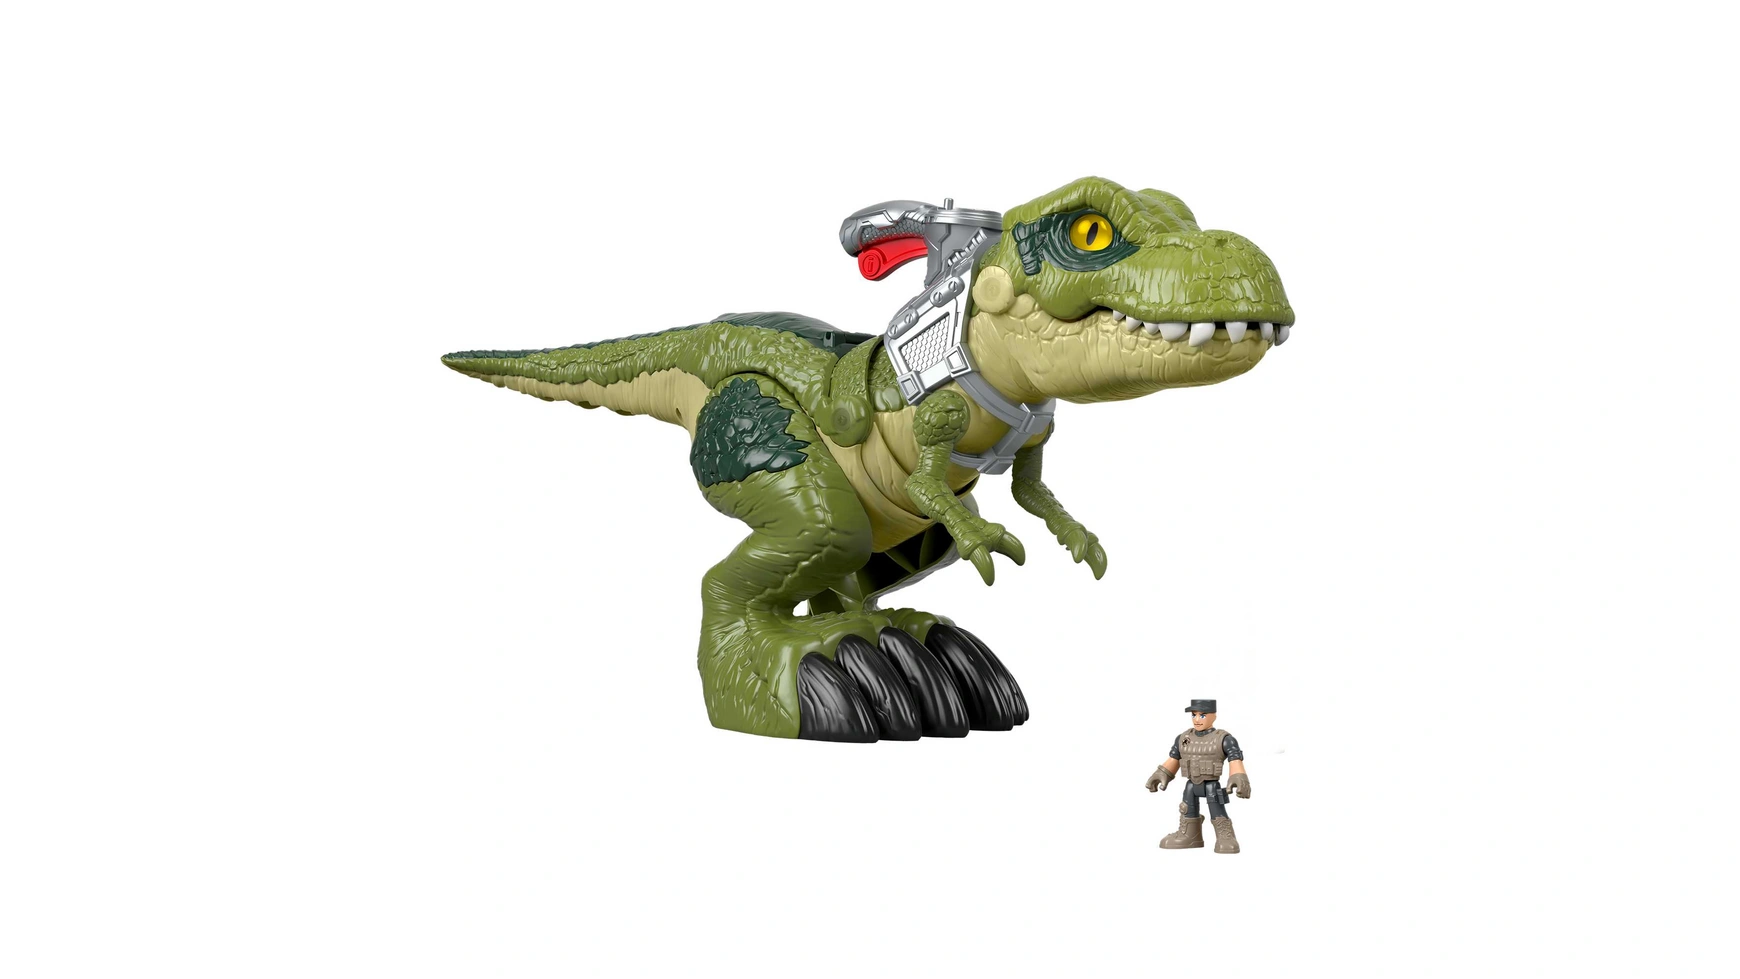 Игрушка-динозавр Fisher-Price Imaginext Jurassic World Hungry T-Rex детский игрушечный динозавр в стиле юрского периода захватывающий мир фильмов аутентичные детали первобытные звуки атак подвижные суст